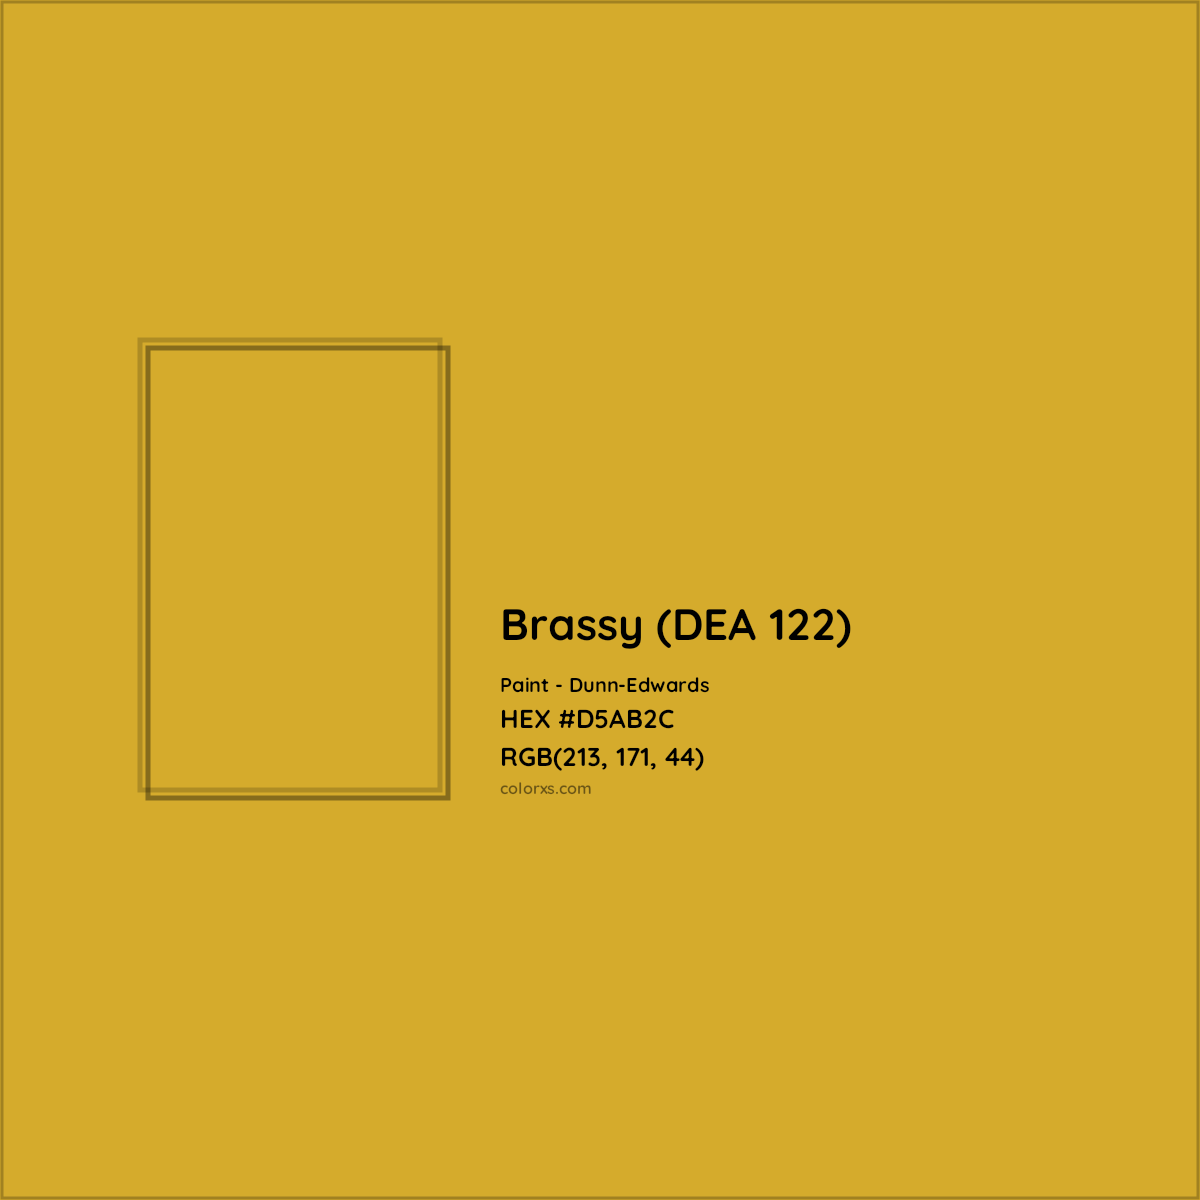 HEX #D5AB2C Brassy (DEA 122) Paint Dunn-Edwards - Color Code